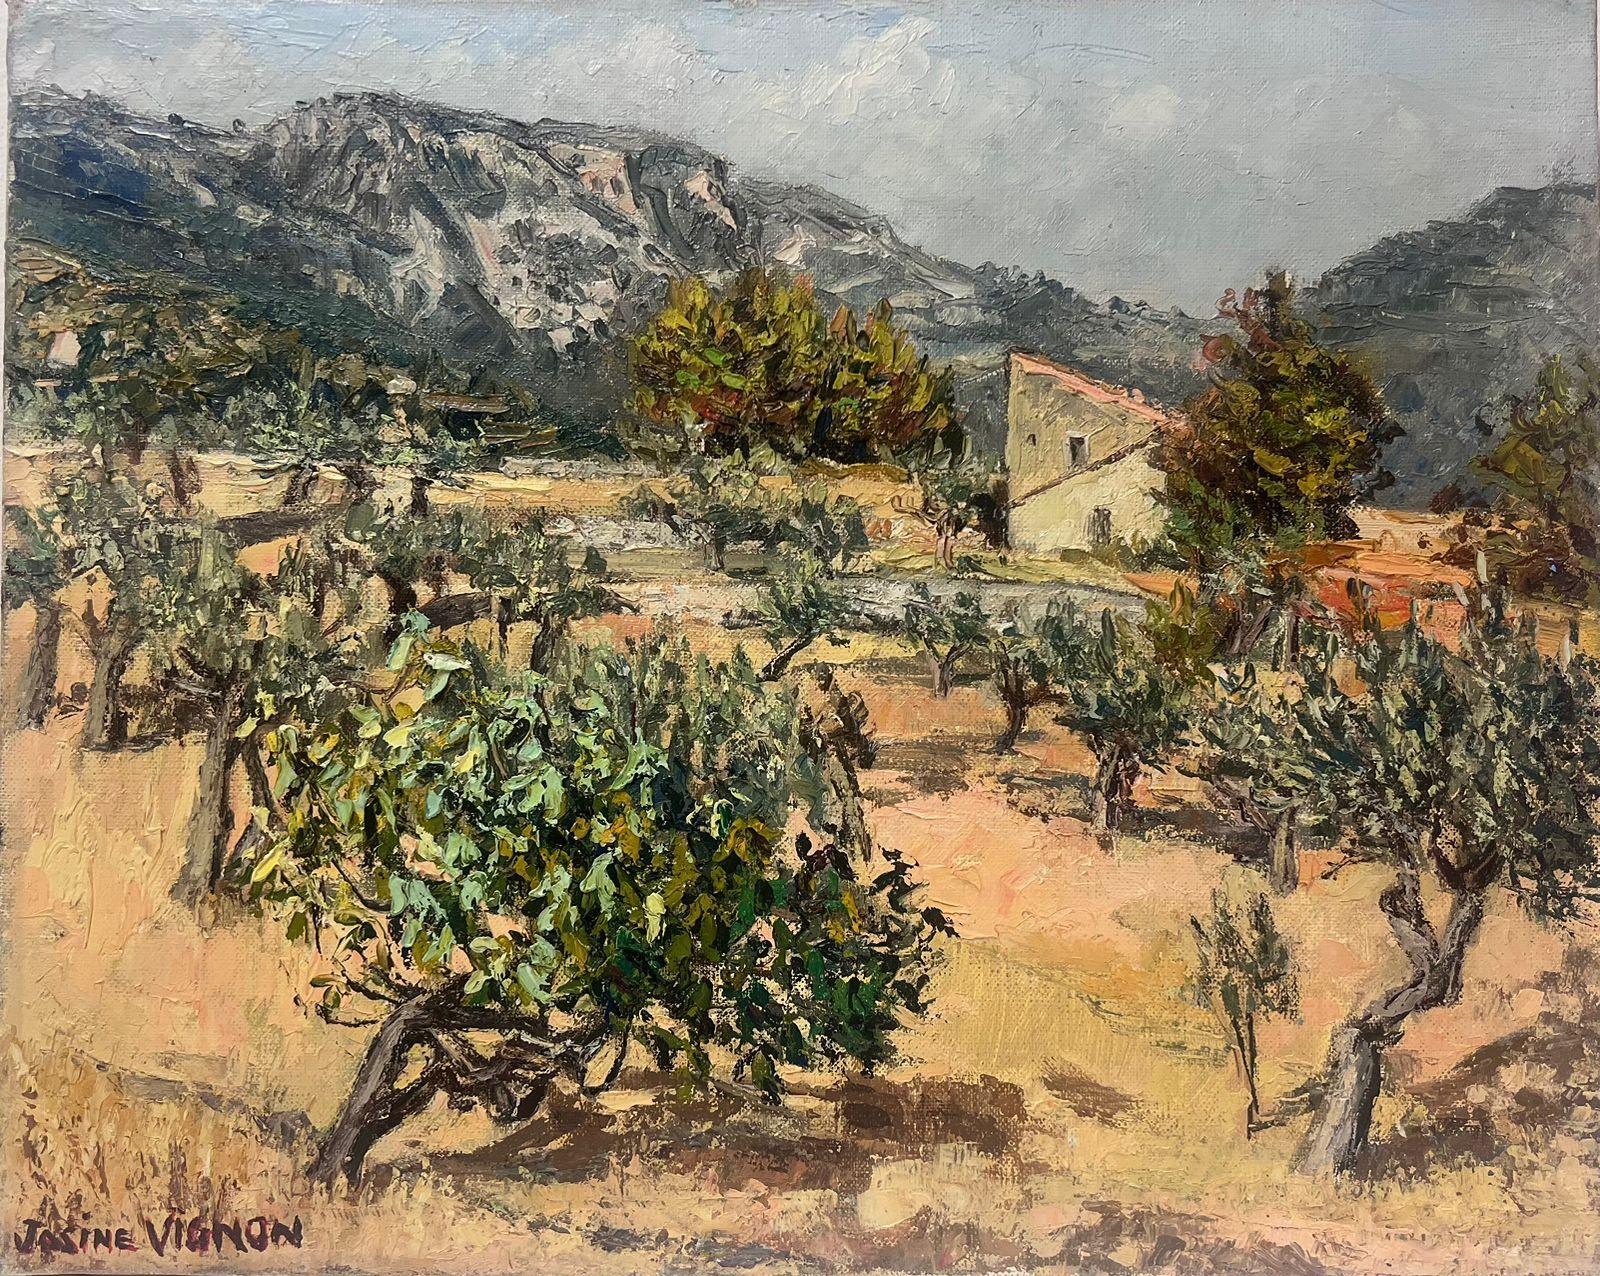 Landscape Painting Josine Vignon - Huile post-impressionniste française des années 1960, signée Olive Groves in Dry Heat Landscape